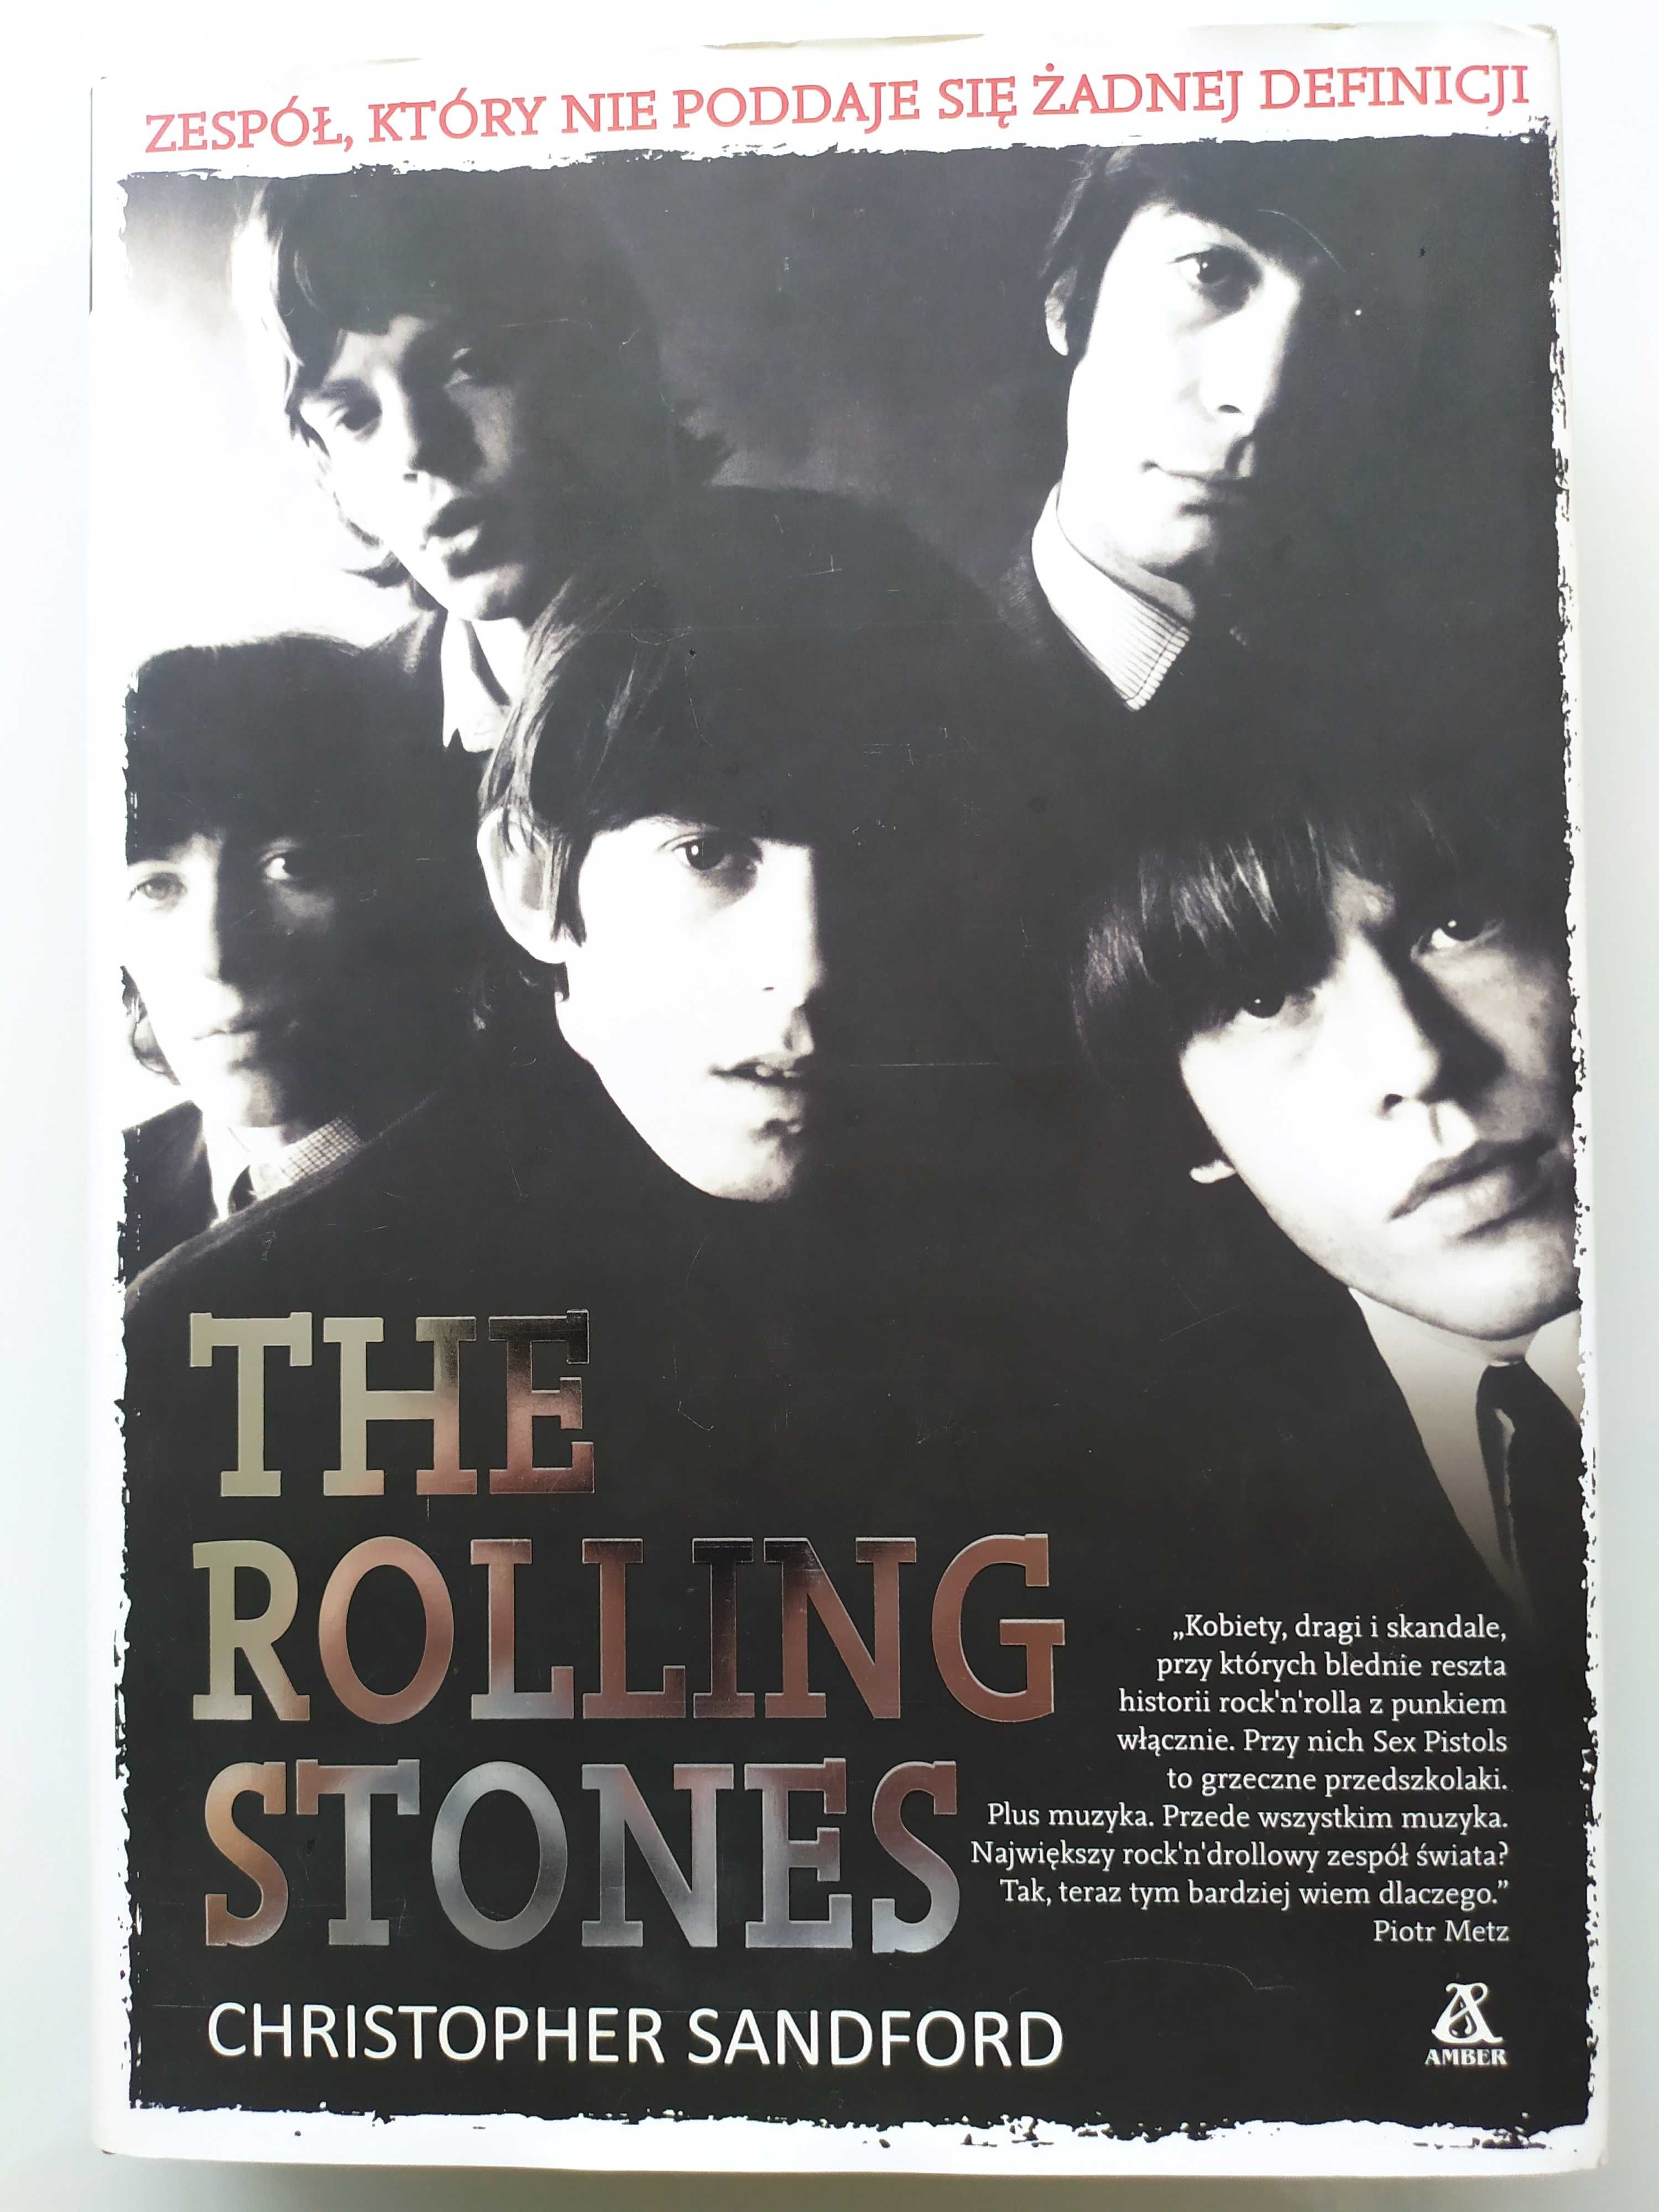 Książka The Rolling Stones Zespół, który nie poddaje się definicji